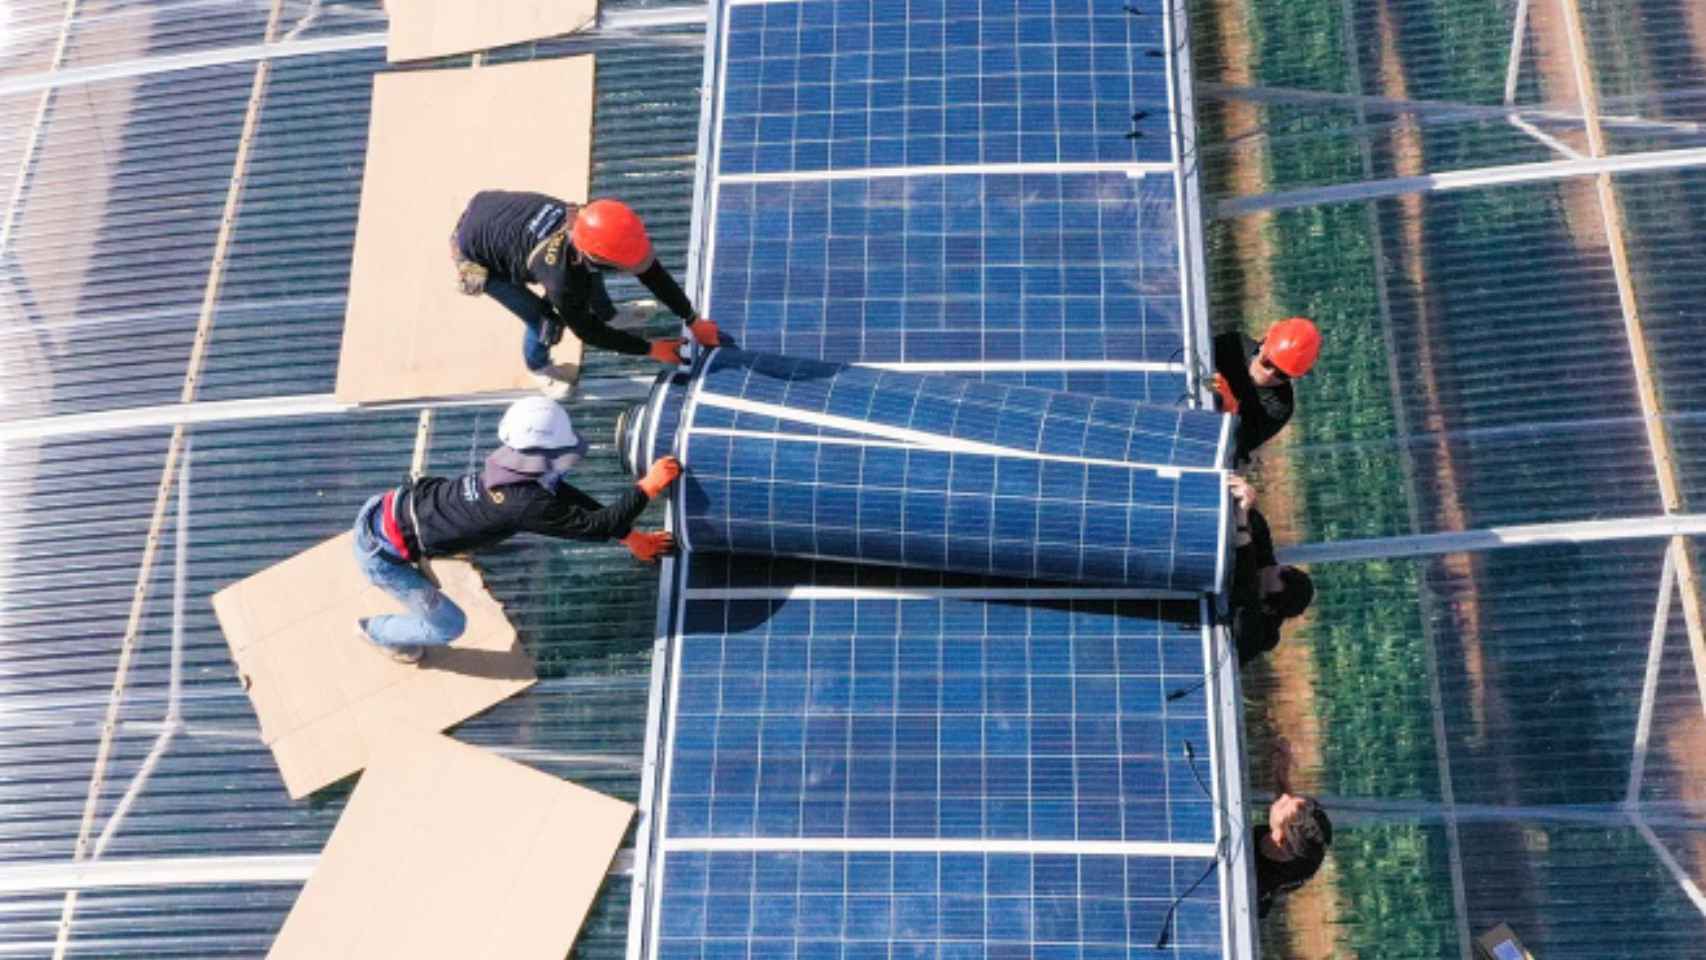 Unas personas instalando los paneles solares flexibles.